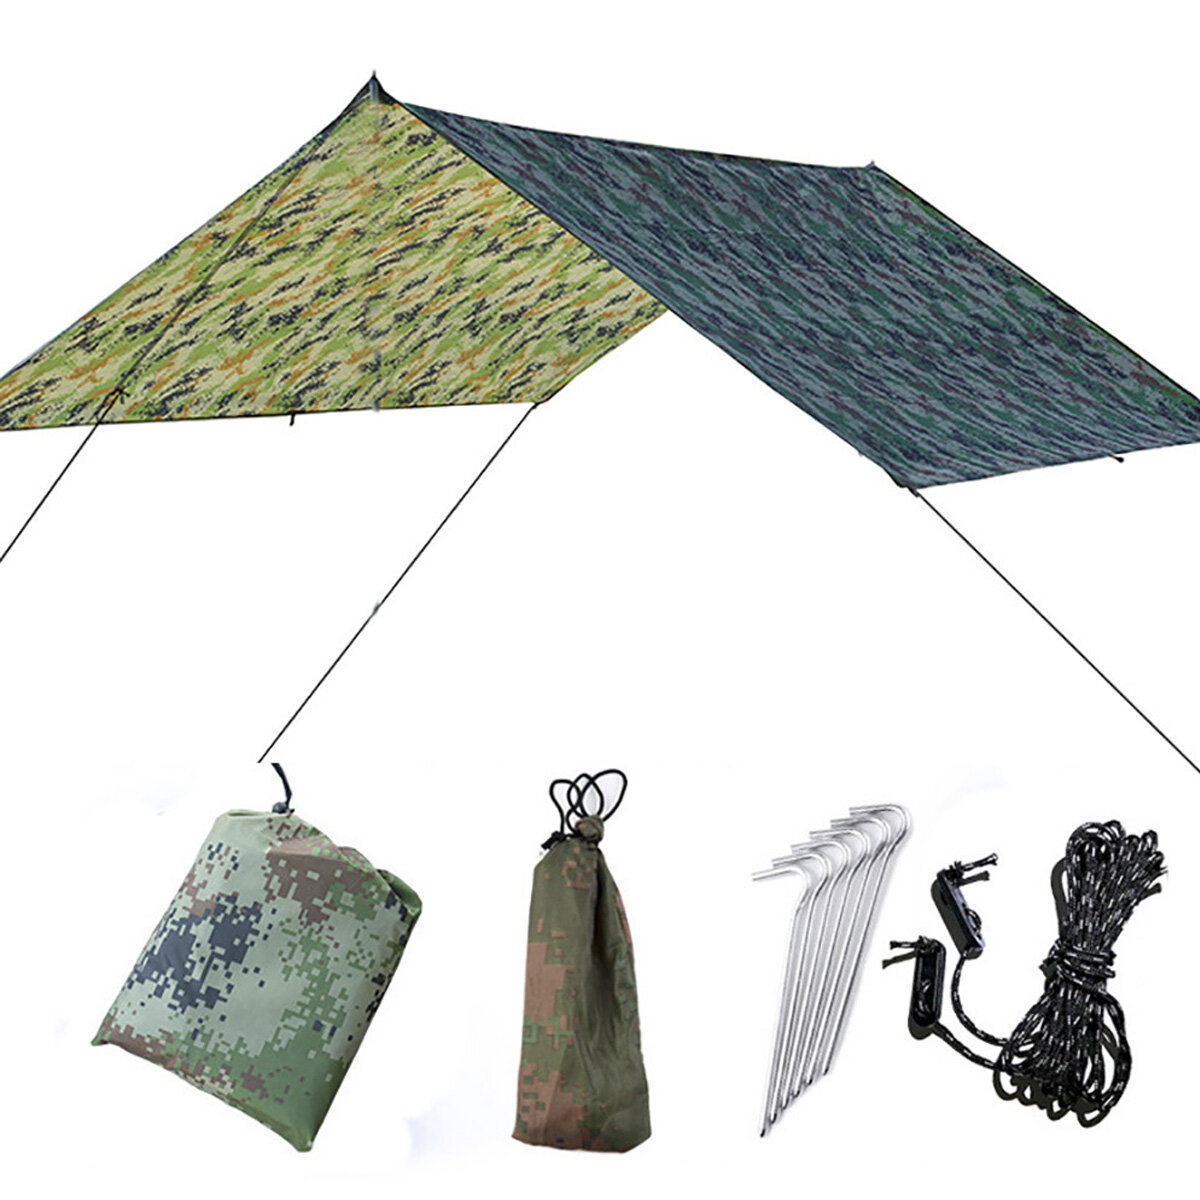 Toldo de 30×29cm para sombra, anti-UV, impermeável, tenda de telhado multifuncional, tapete de piquenique ao ar livre, camping e jardim.